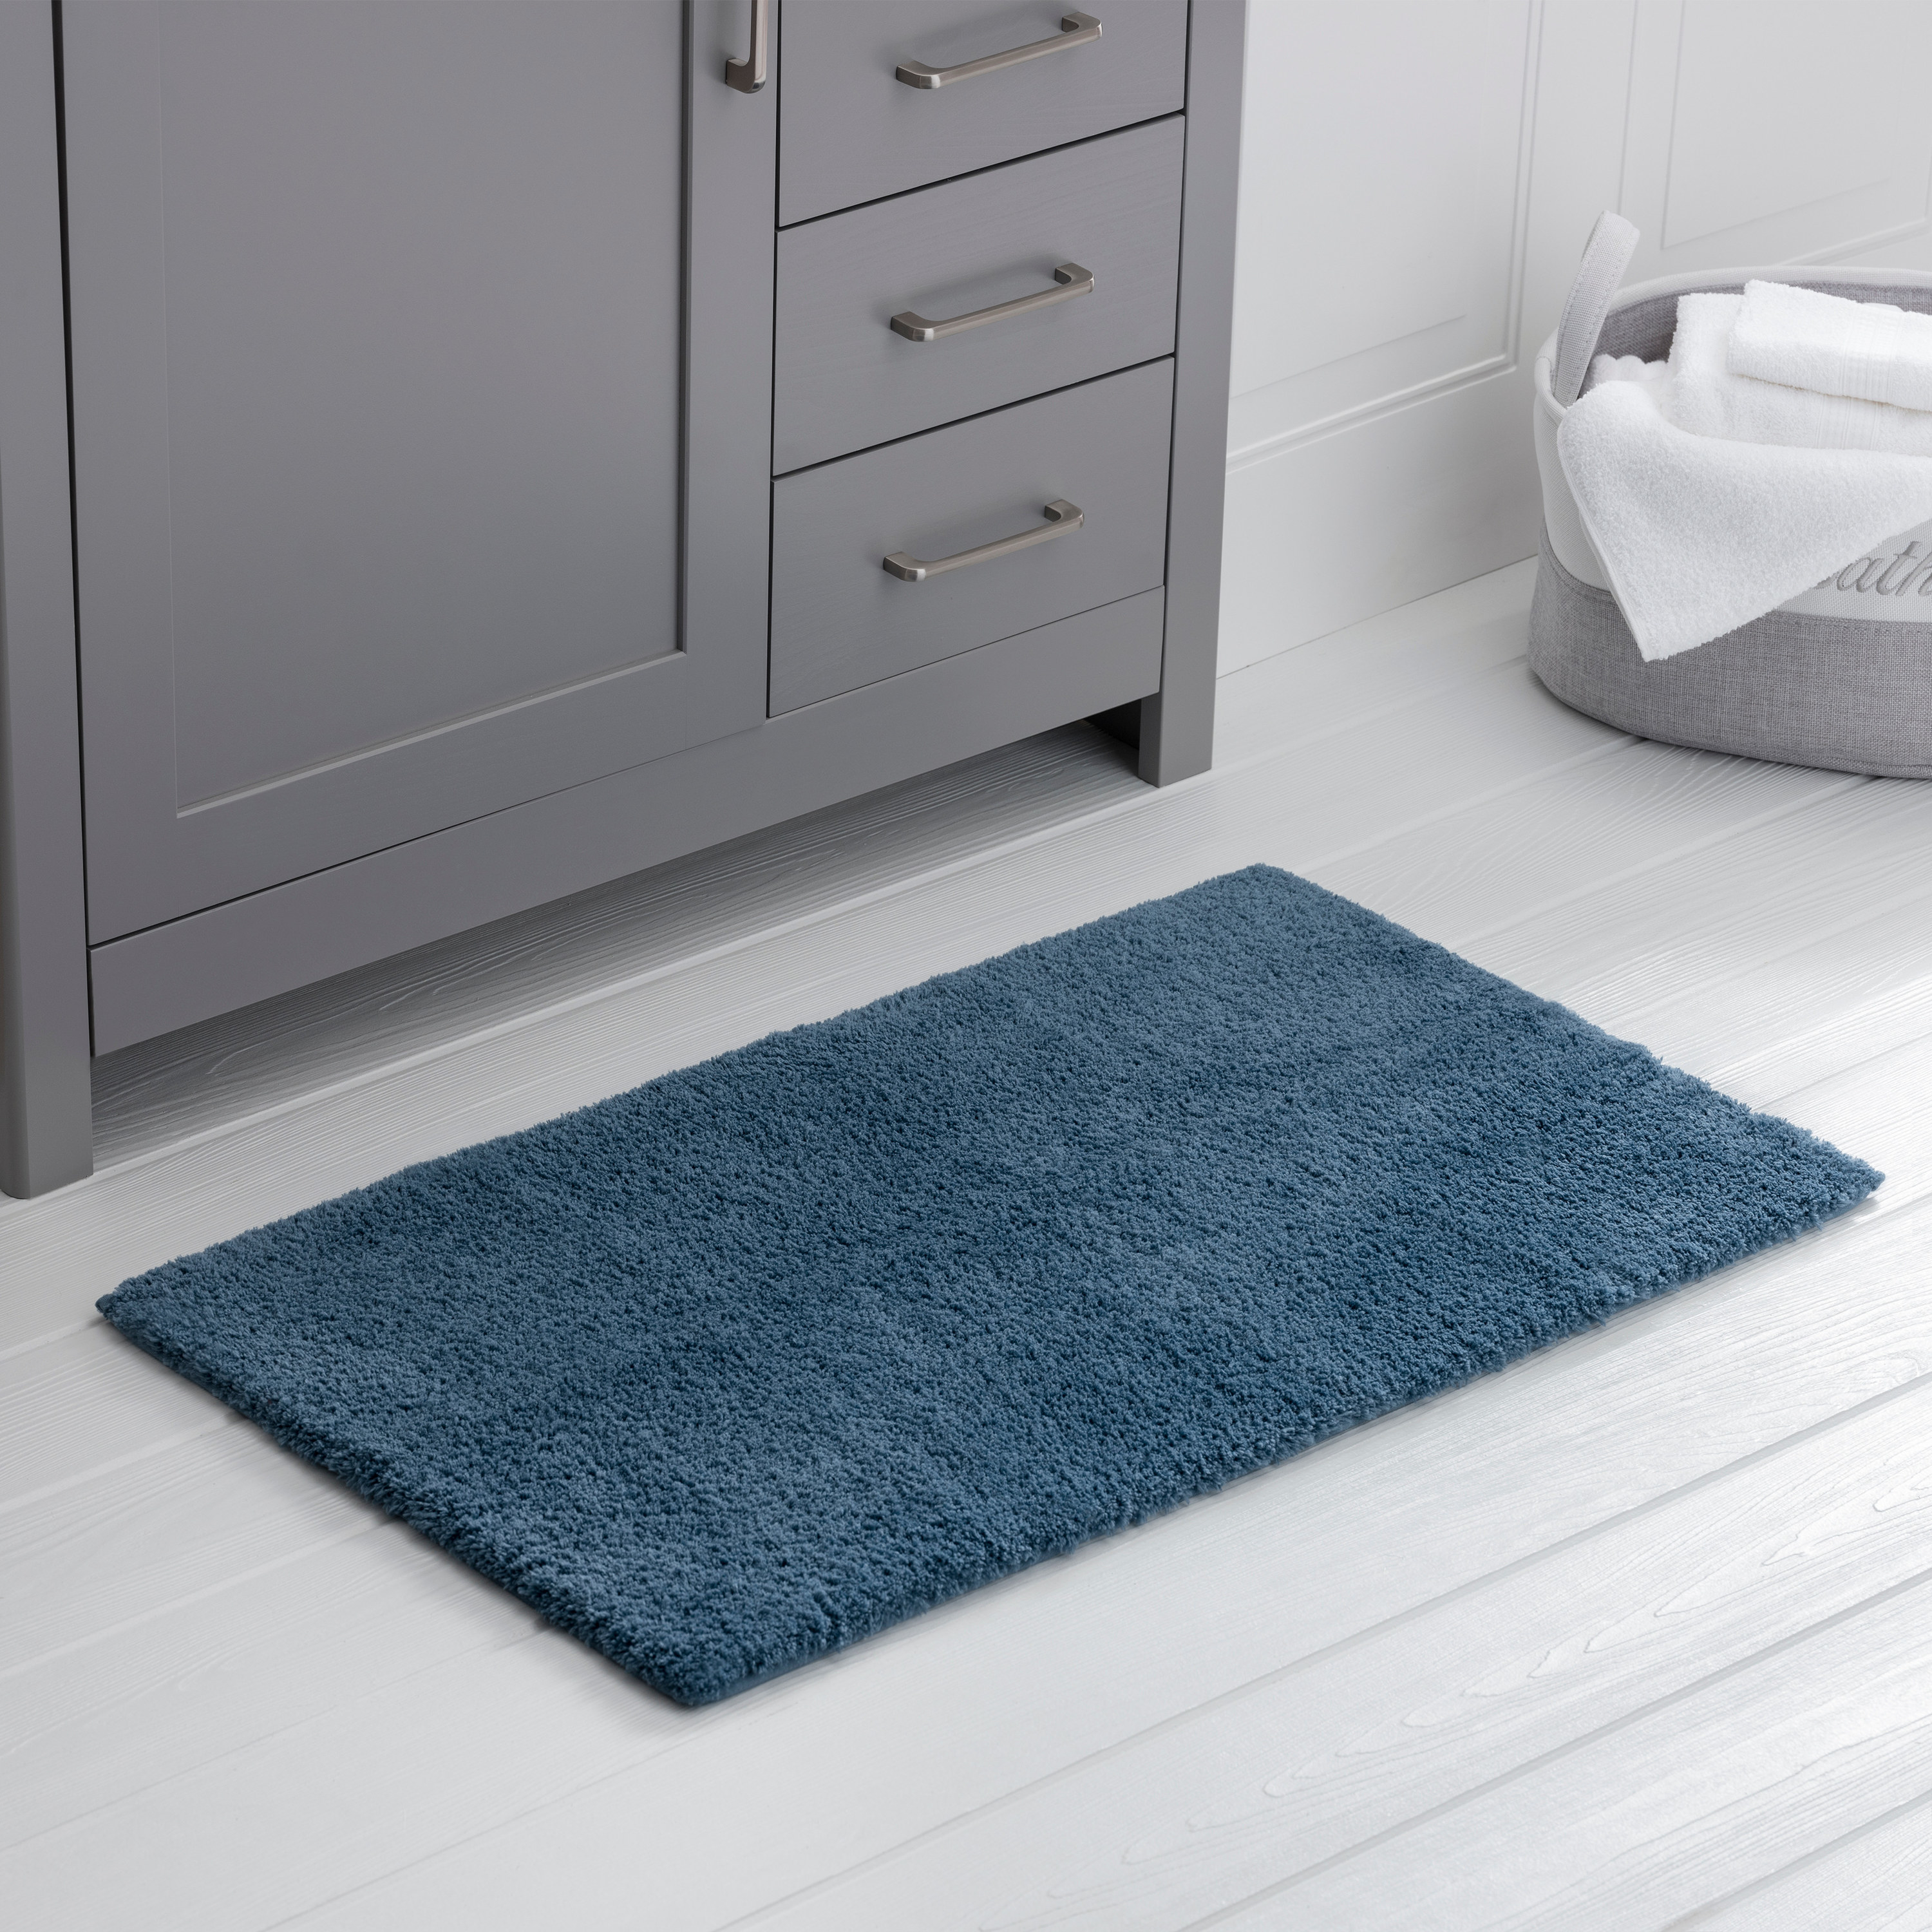 a dark blue plush rug in a bathroom 